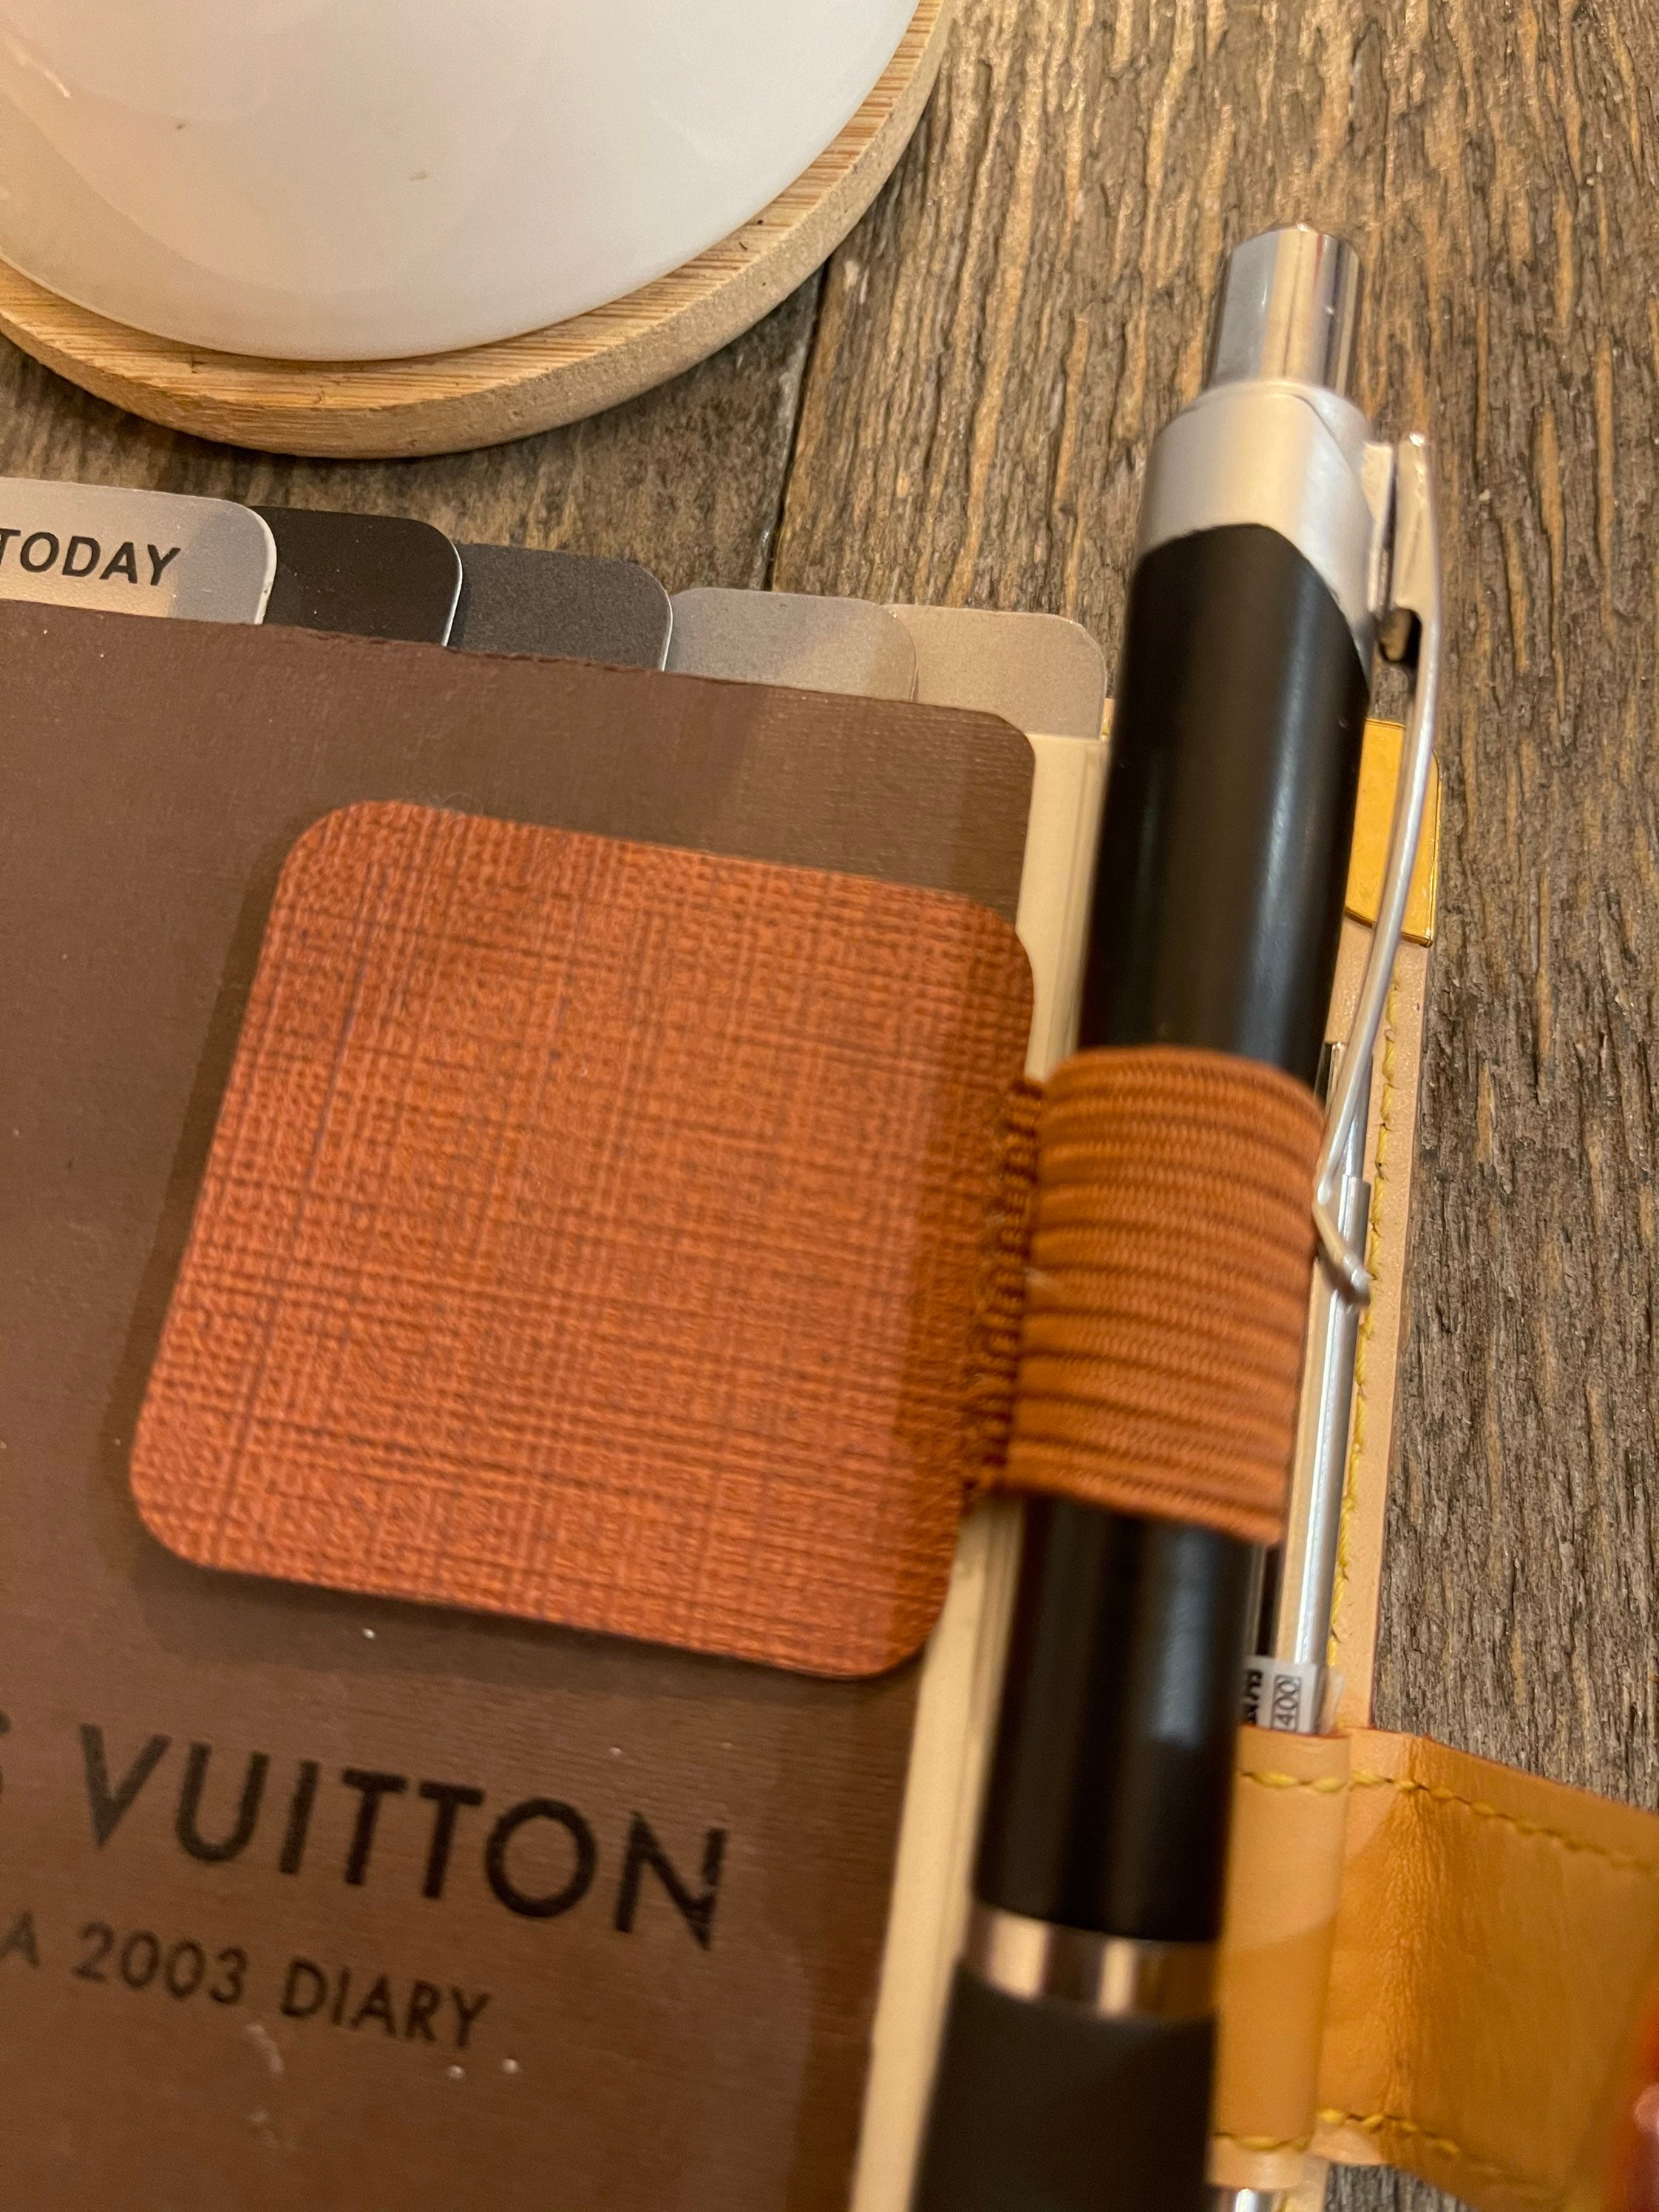 2019 Refill Calendar fits Louis Vuitton Agenda PM + Planner Paper + Pen  #Handmade